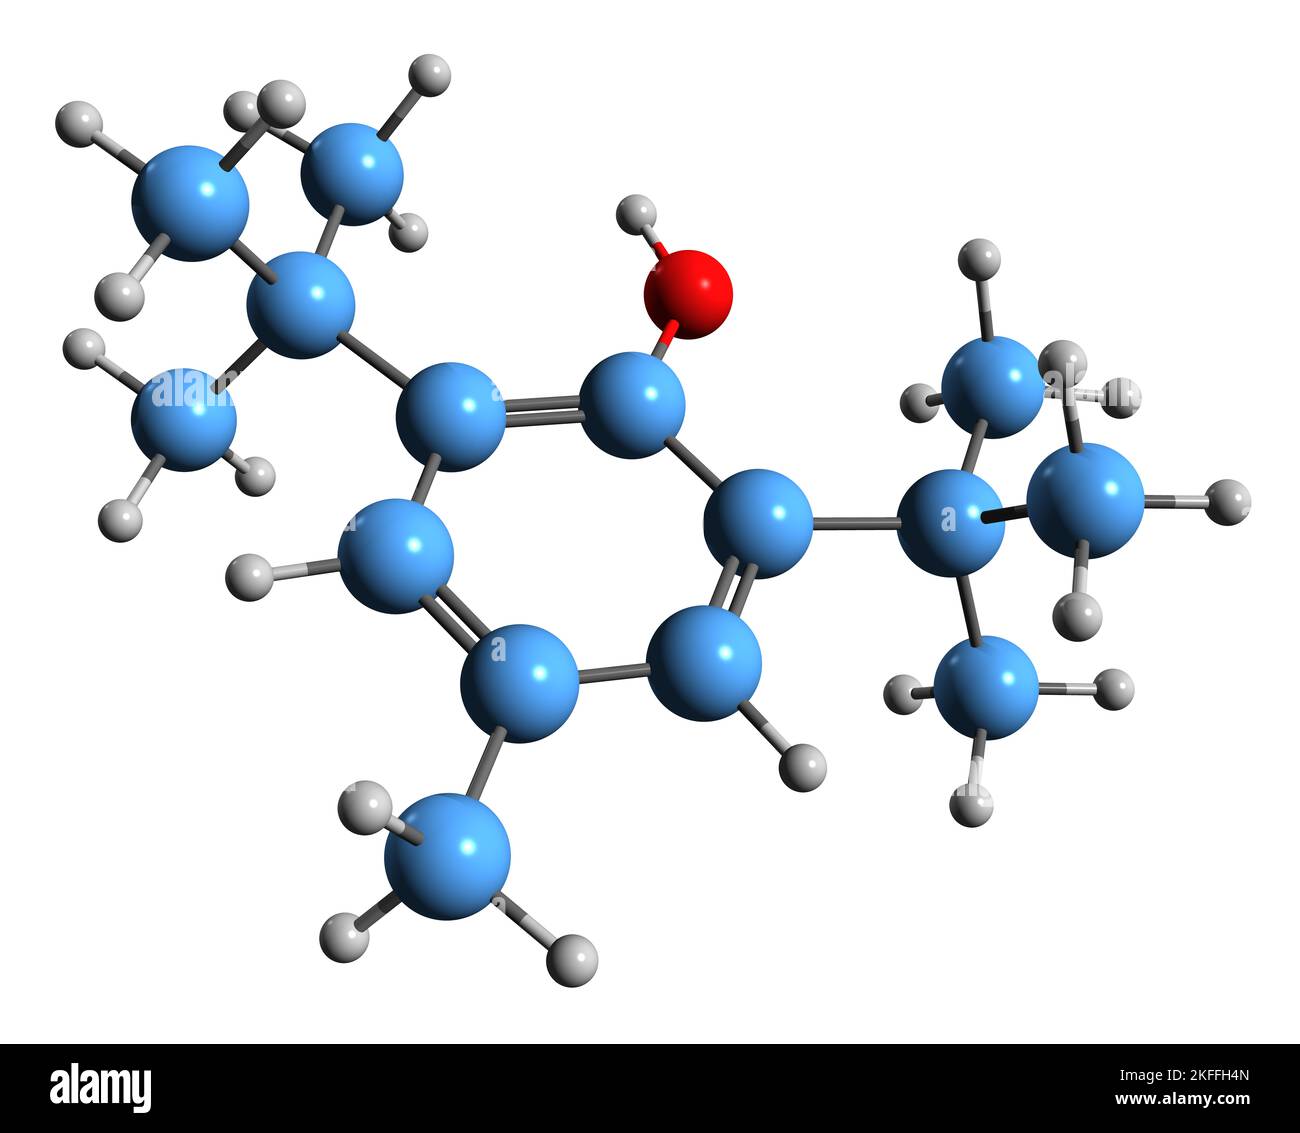 3D image of Butylated hydroxytoluene skeletal formula - molecular chemical structure of dibutylhydroxytoluene isolated on white background Stock Photo